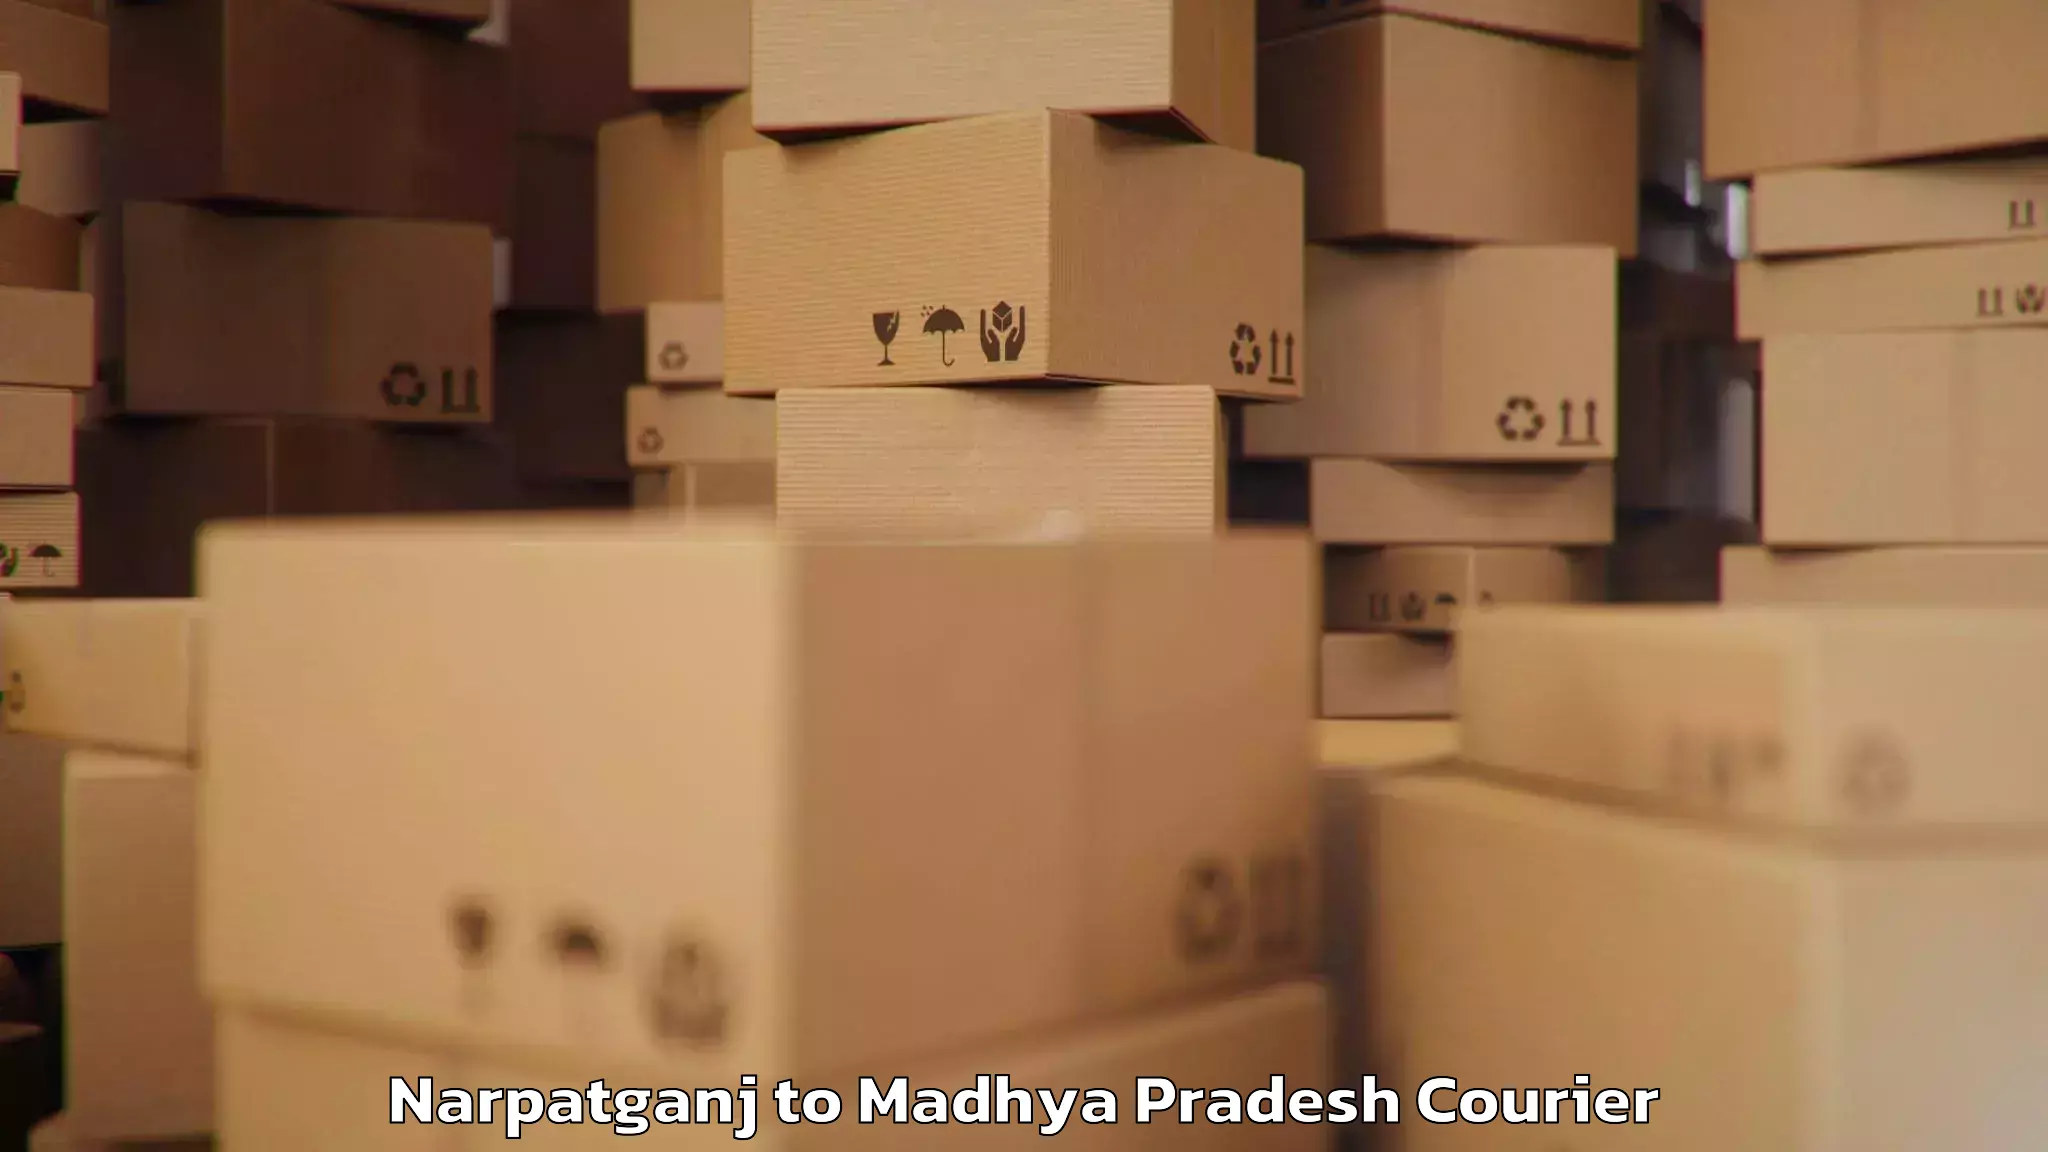 Baggage courier service Narpatganj to Madhya Pradesh